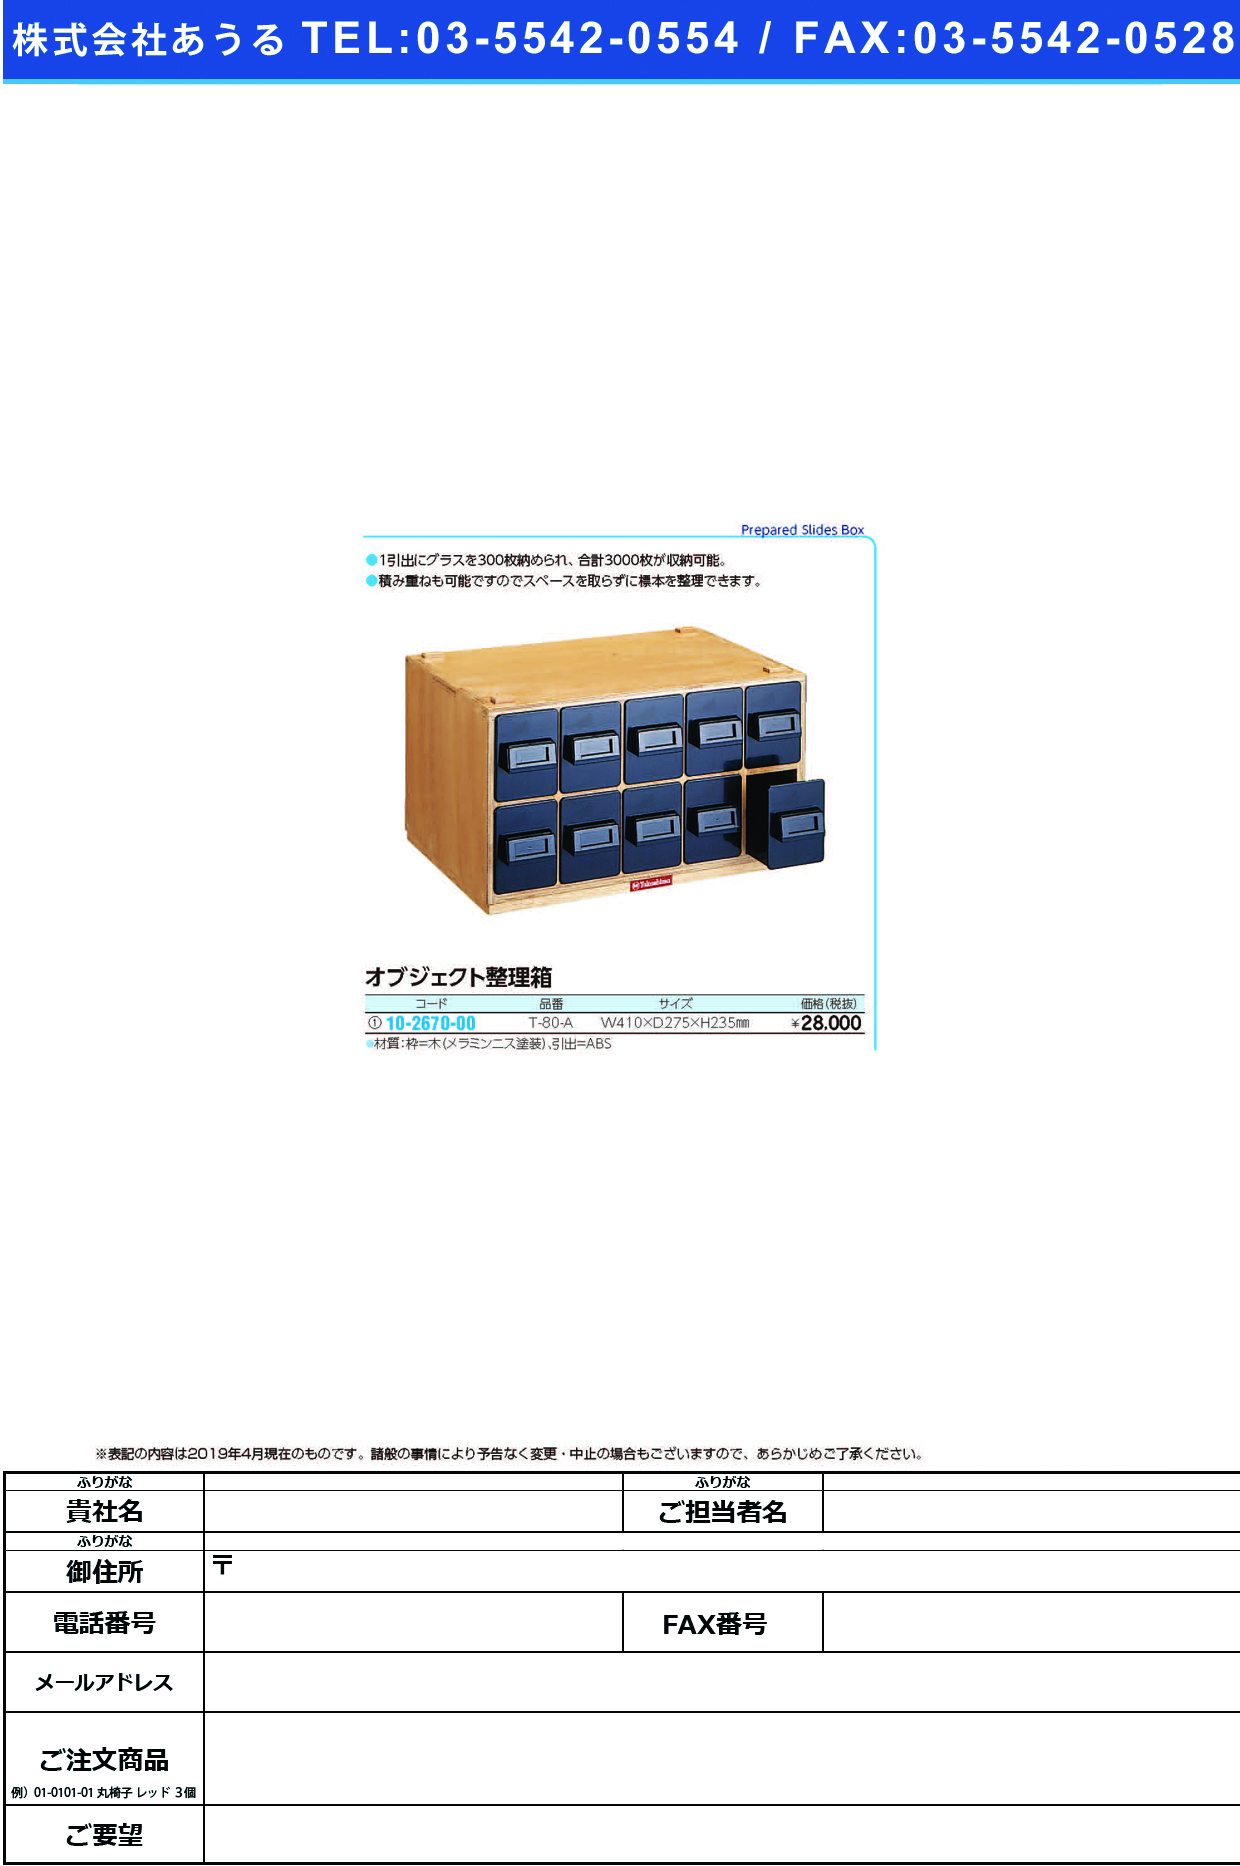 (10-2670-00)オブジェクト整理箱 T-80-A ｵﾌﾞｼﾞｪｸﾄｾｲﾘﾊﾞｺ【1台単位】【2019年カタログ商品】